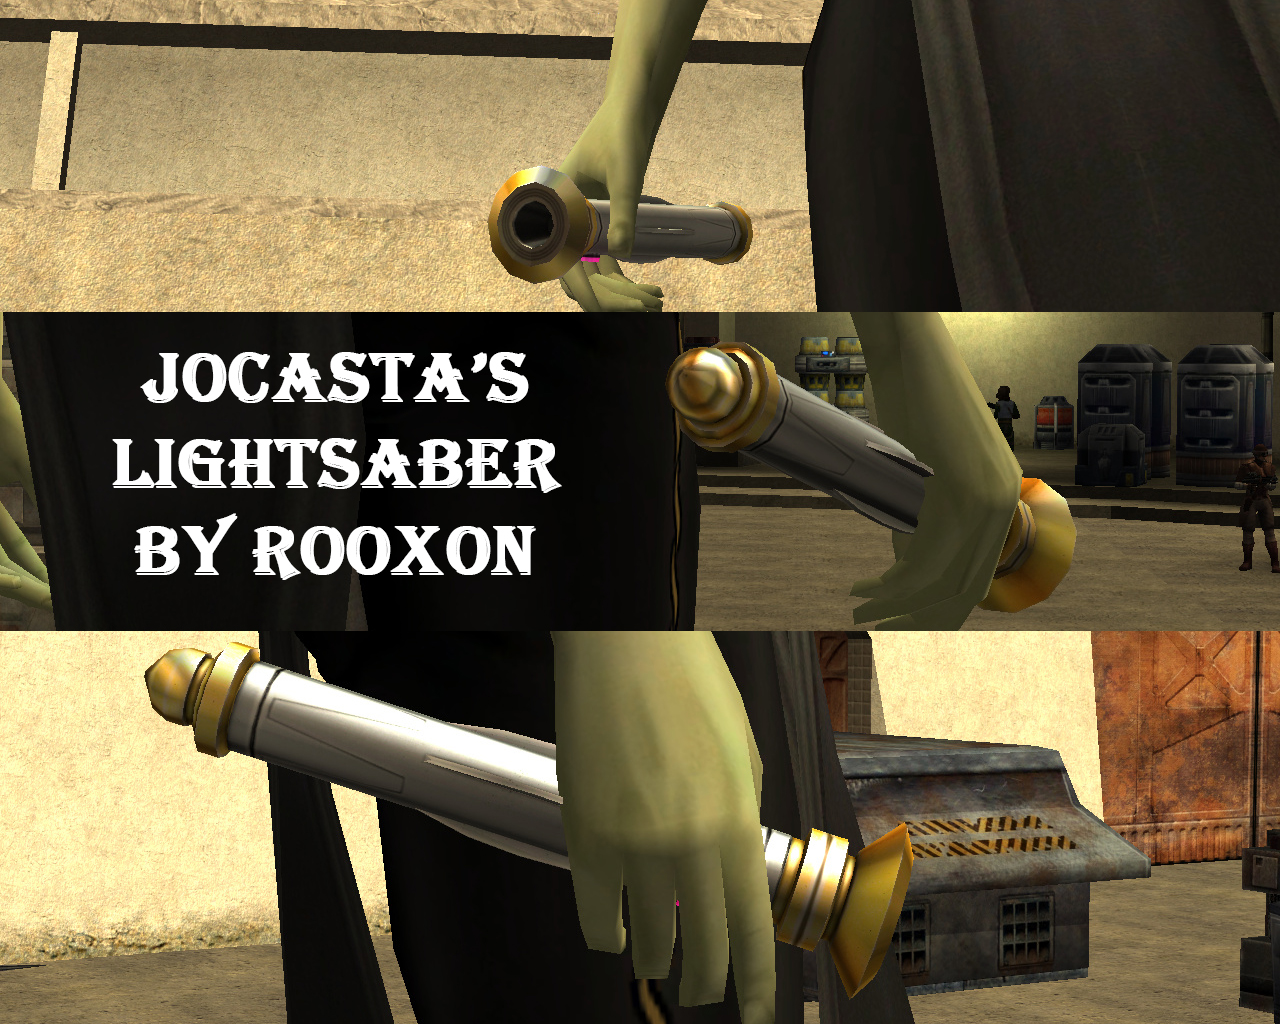 More information about "Jocasta Nu's Lightsaber"